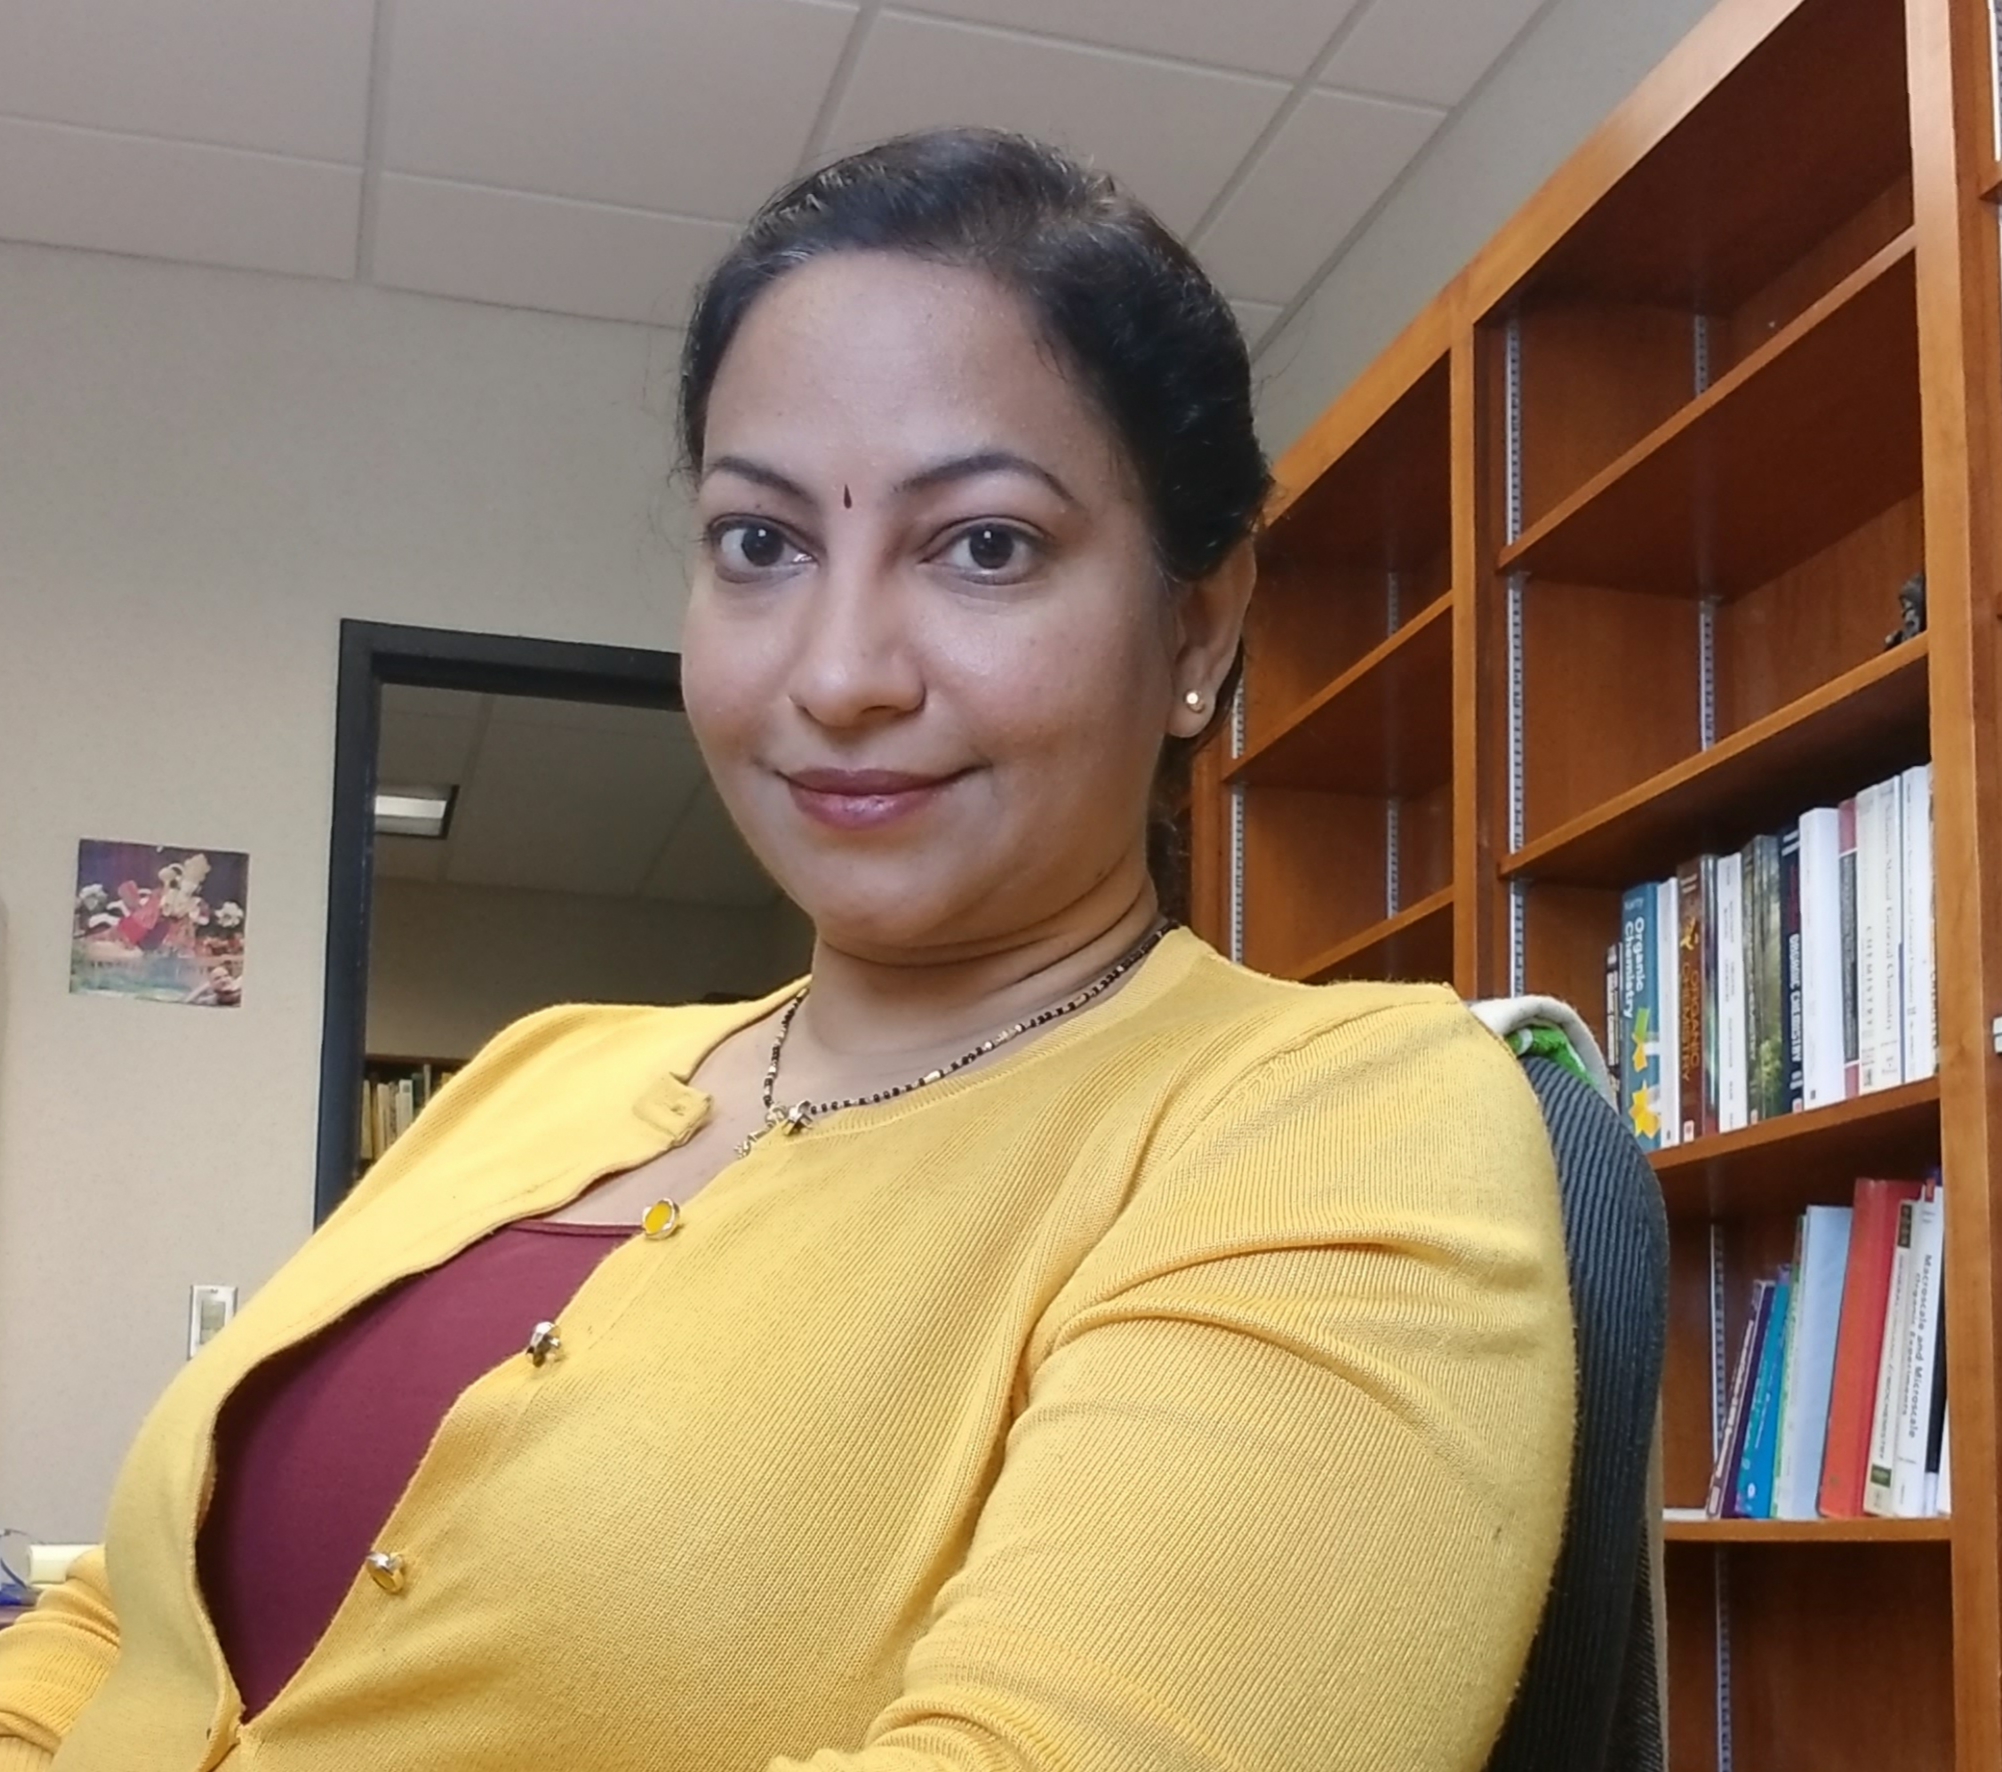 Dr. Shipra Gupta